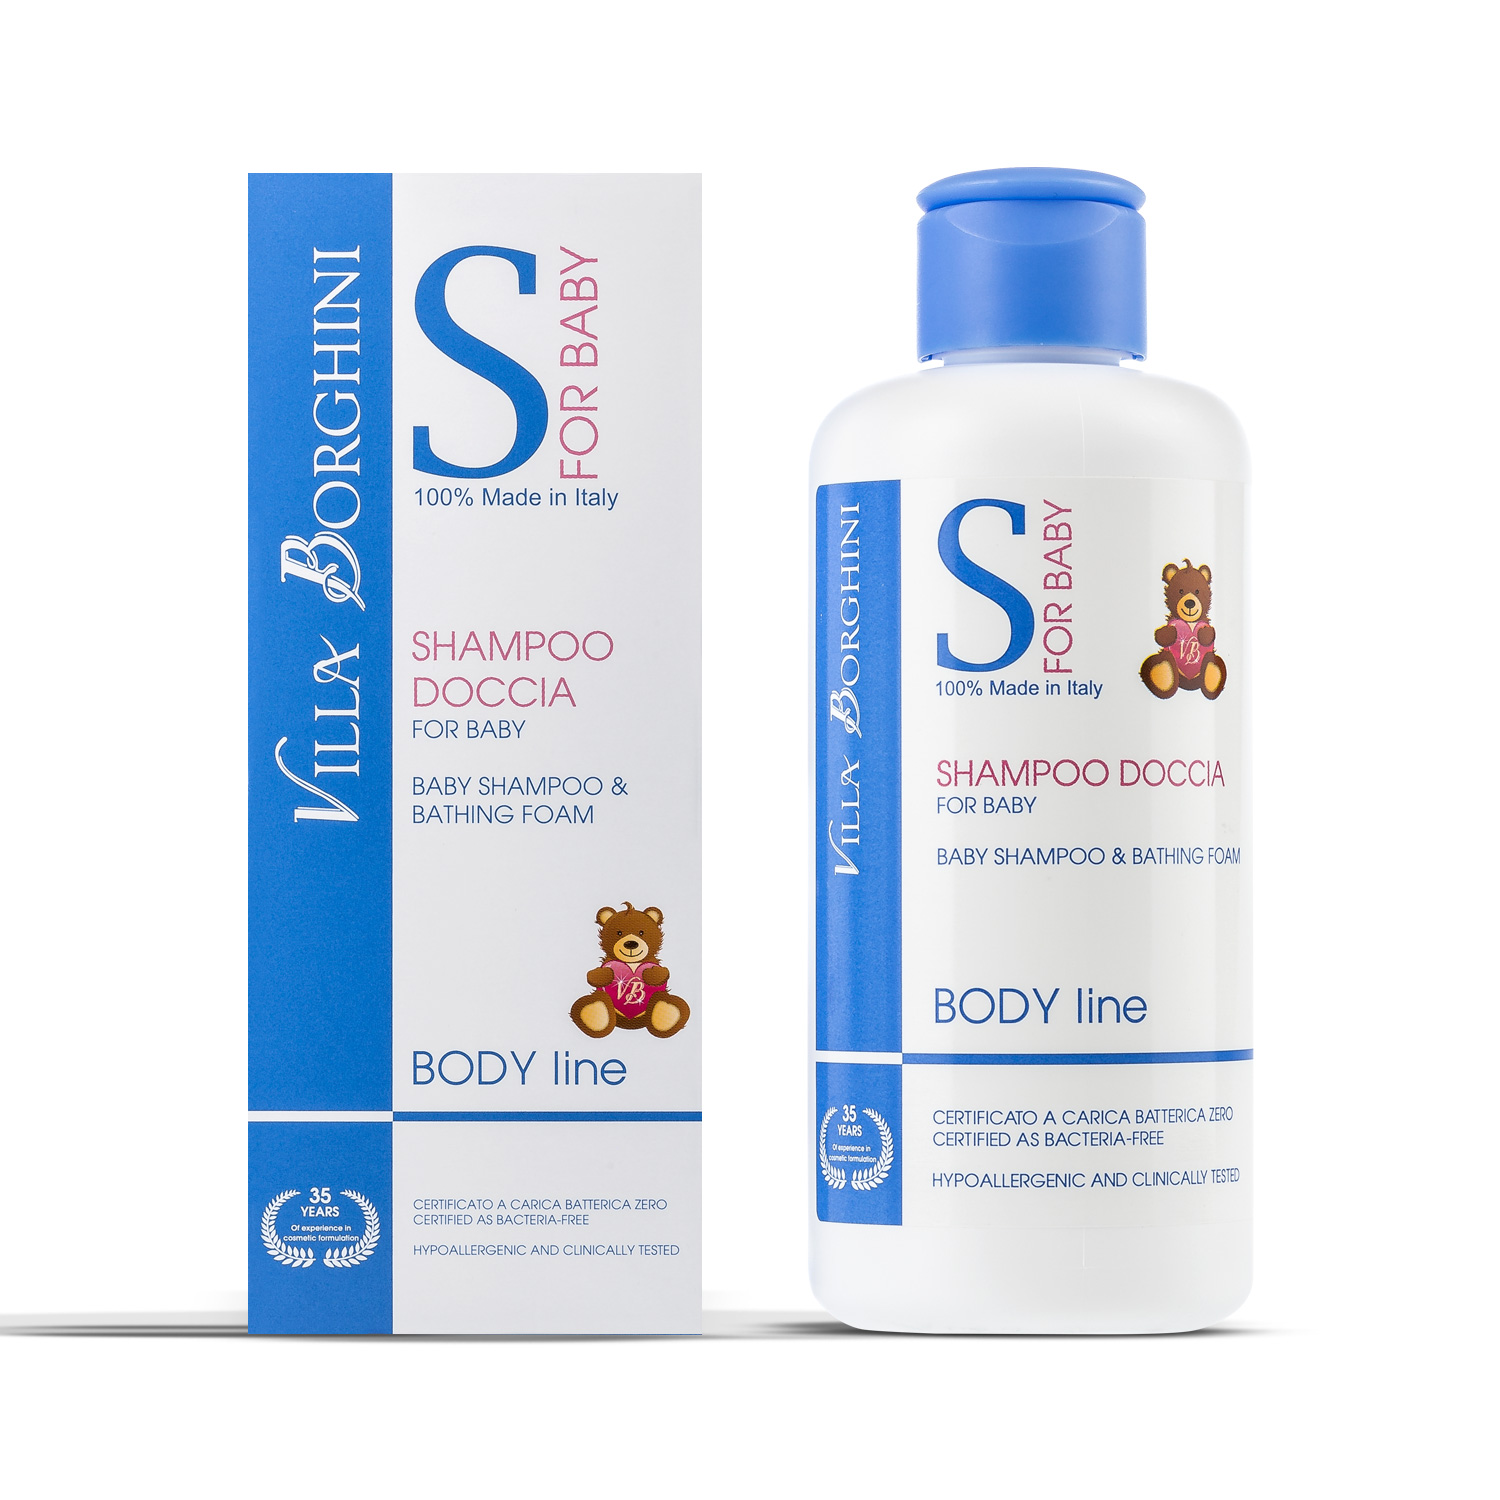 Shampoo doccia for baby 200 ml - Villa Borghini®